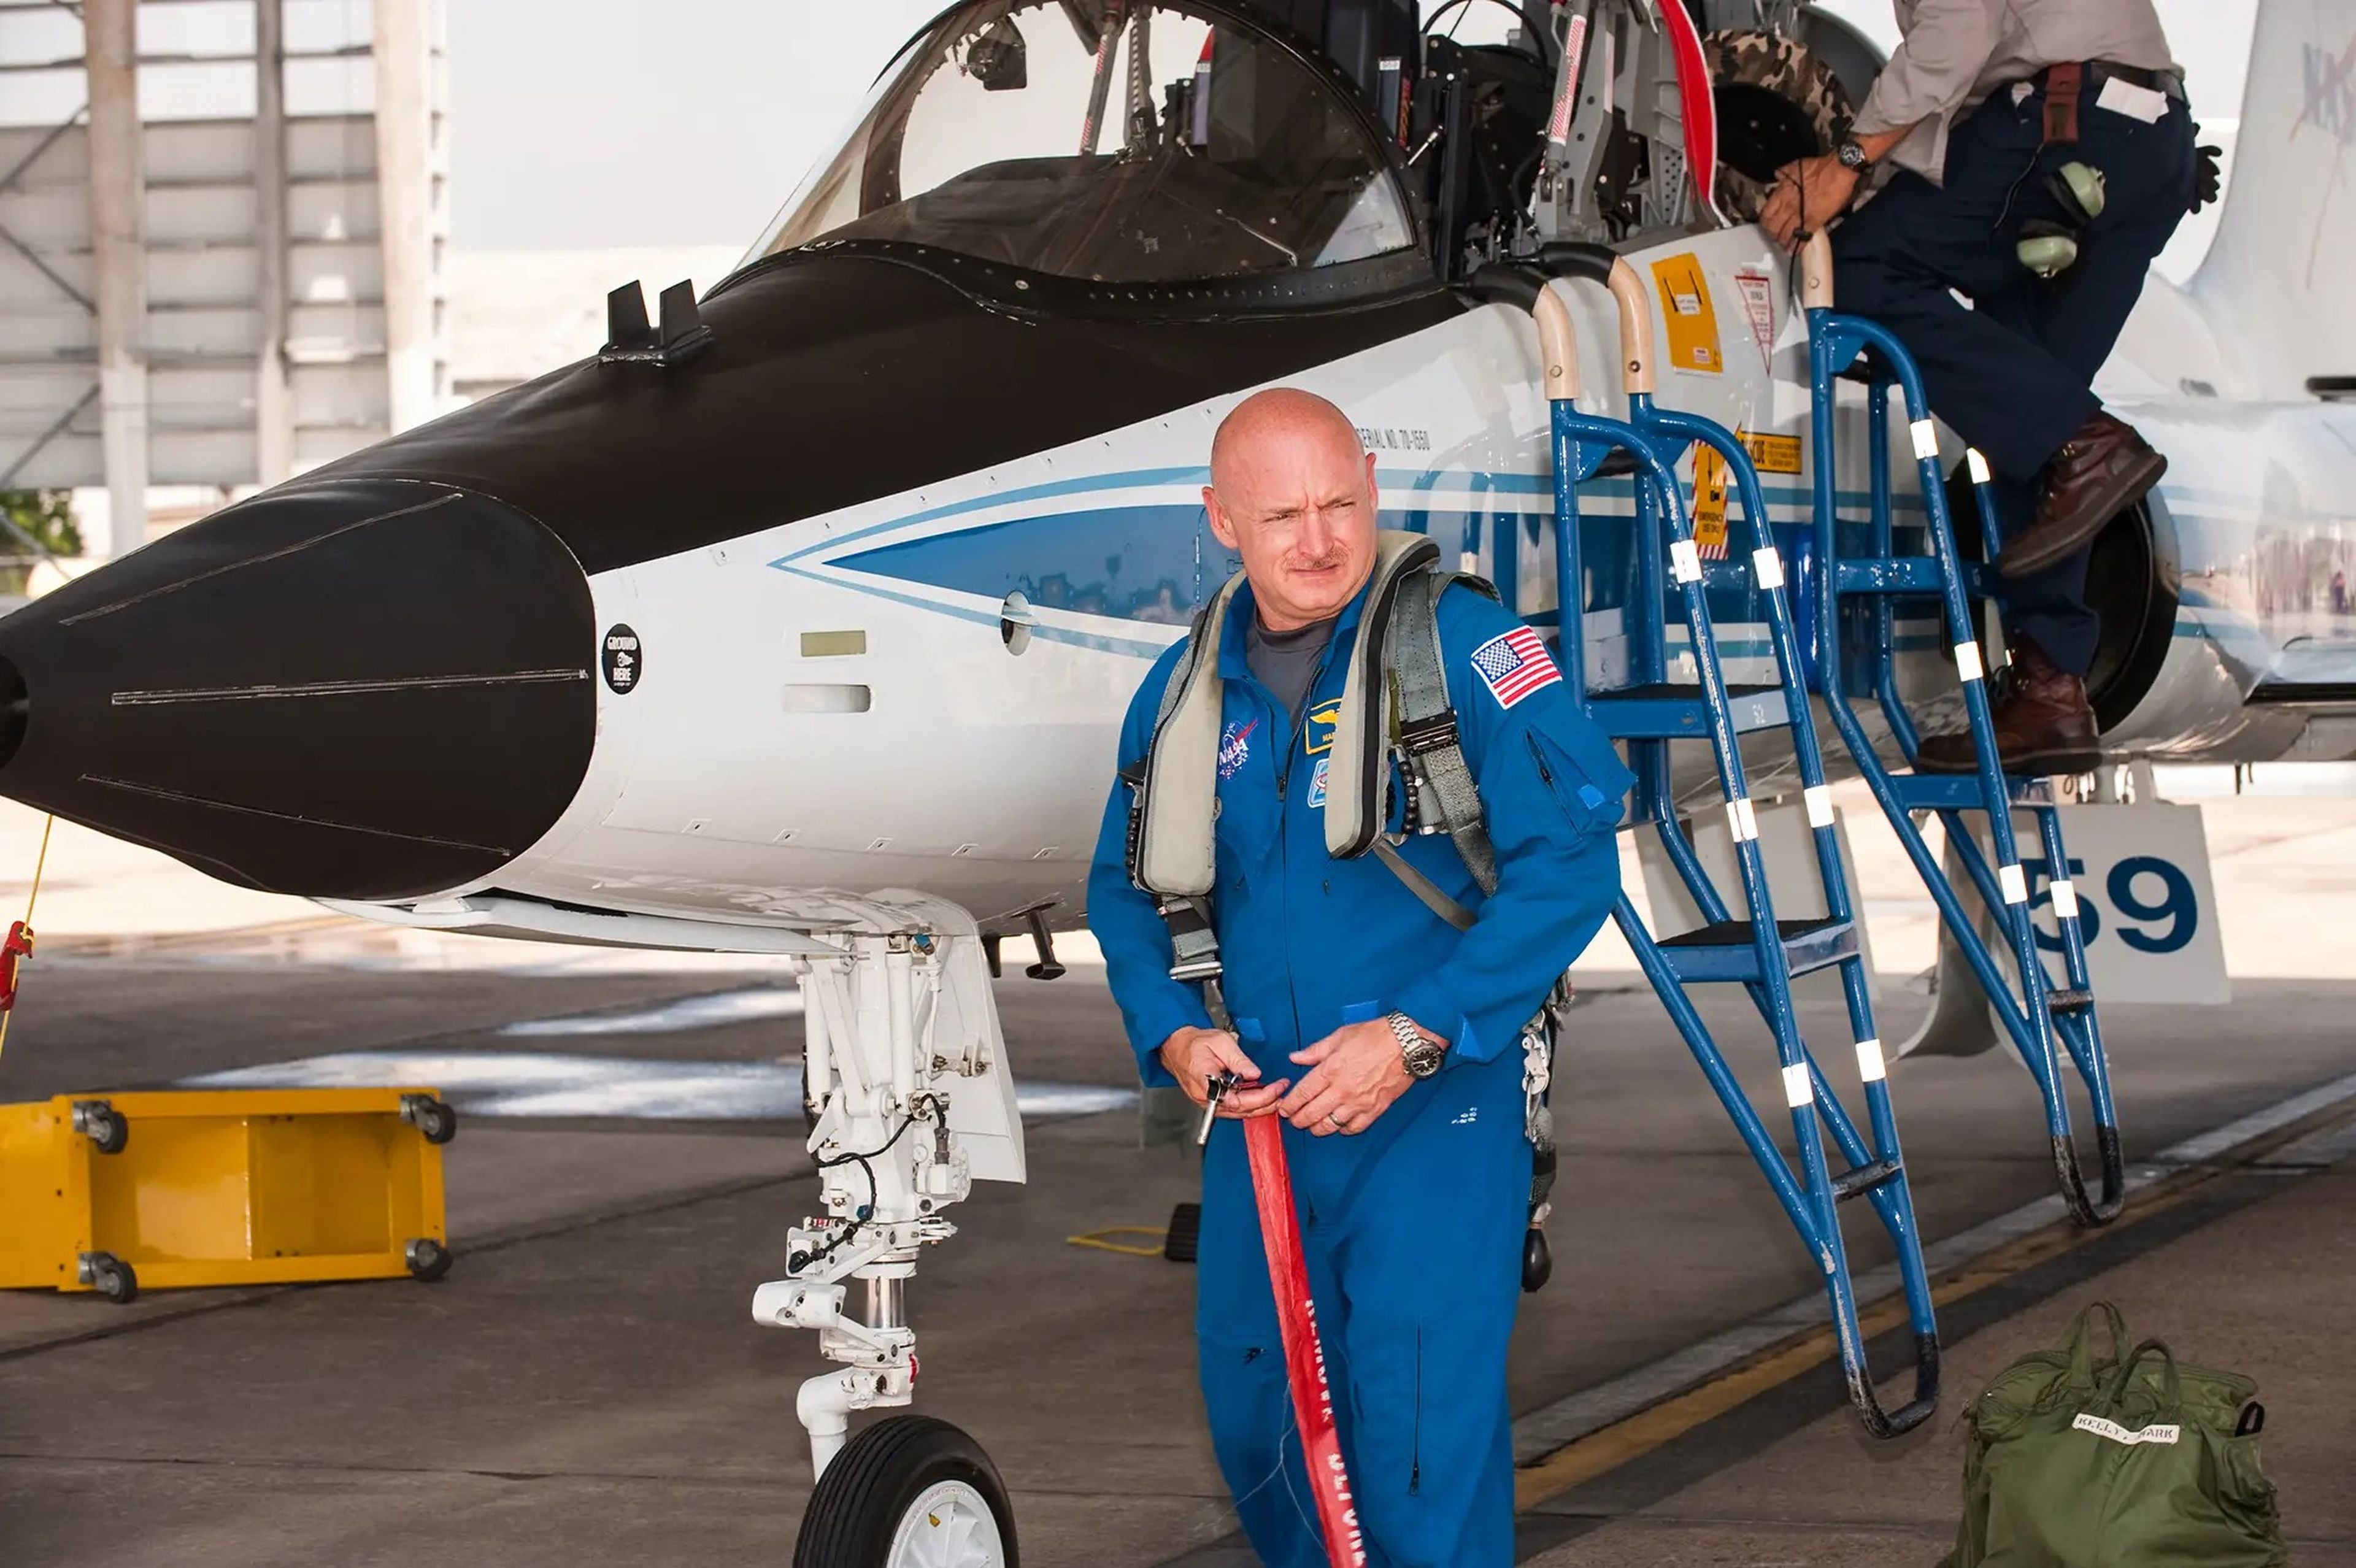 El astronauta Mark Kelly se prepara para un vuelo en un avión de entrenamiento T-38 de la NASA.